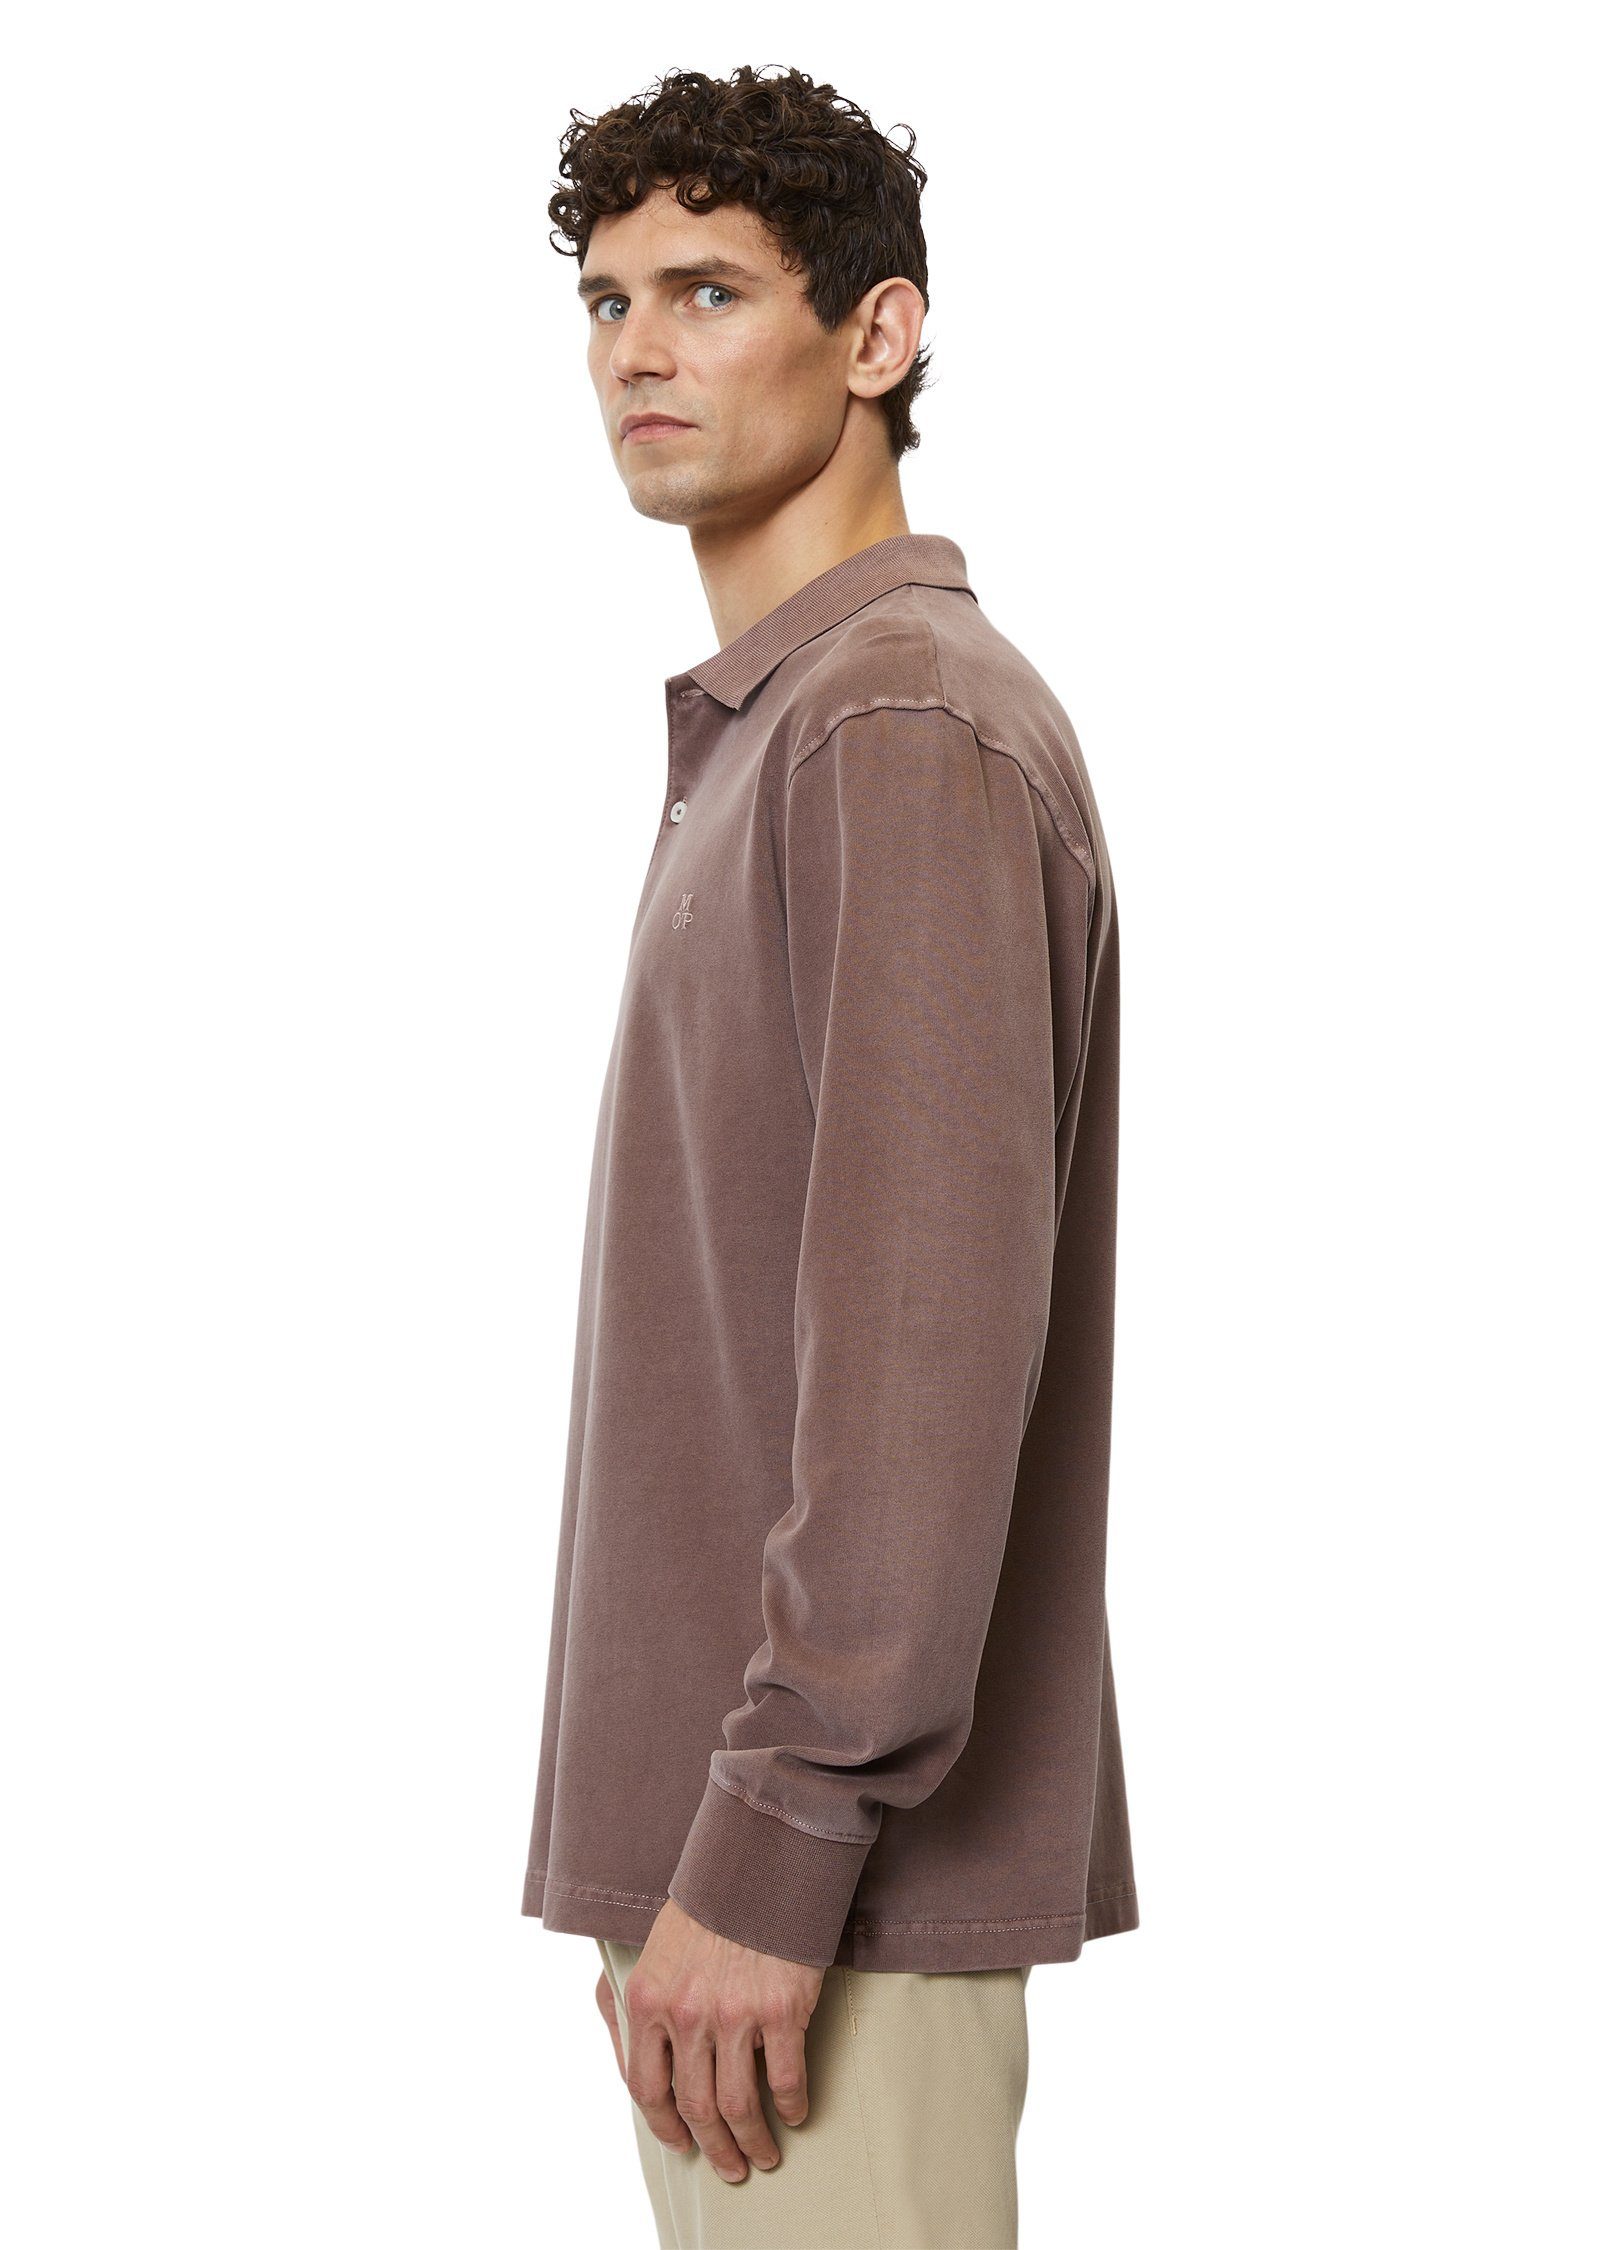 Marc O'Polo Langarm-Poloshirt in schwerer Soft-Touch-Jersey-Qualität braun